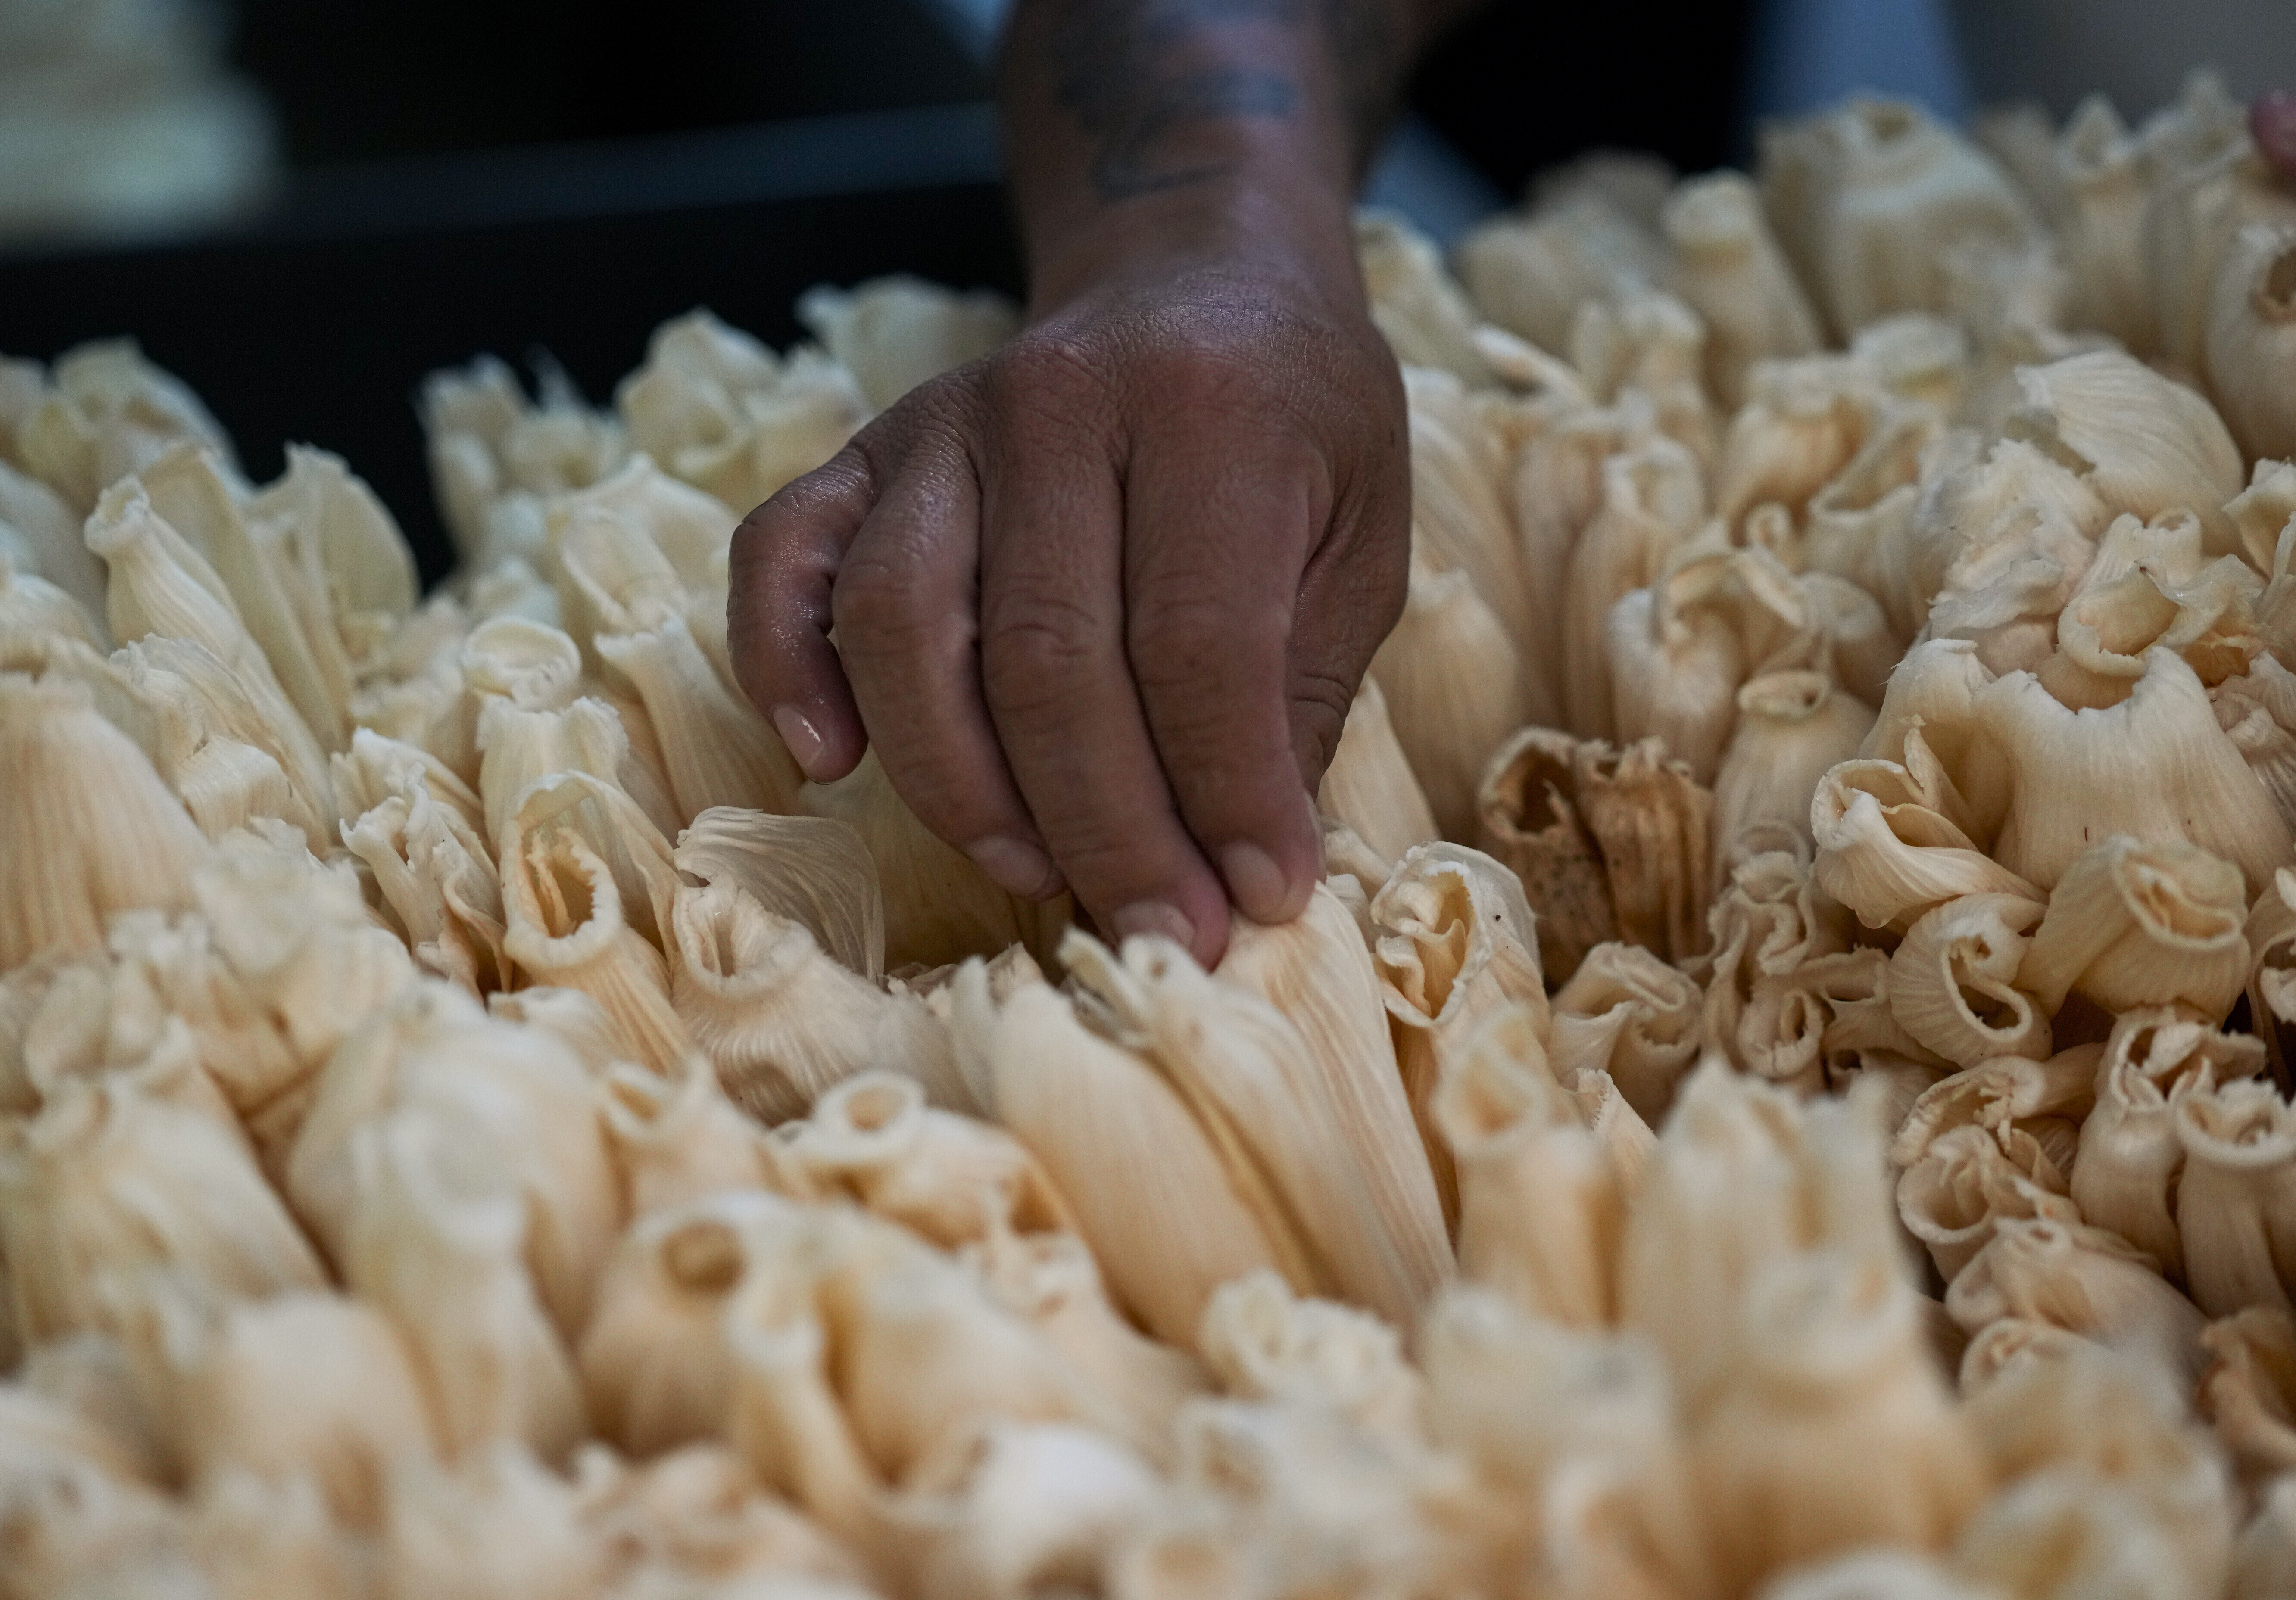 Un trabajador clasifica vainas de maíz para envolver tamales antes del Día de la Candelaria en la fábrica de tamales Flor de Lis, en la Ciudad de México, el 26 de enero de 2023. Tamal proviene del vocablo náhuatl “tamalli” que significa envuelto. (AP Foto/Fernando Llano)